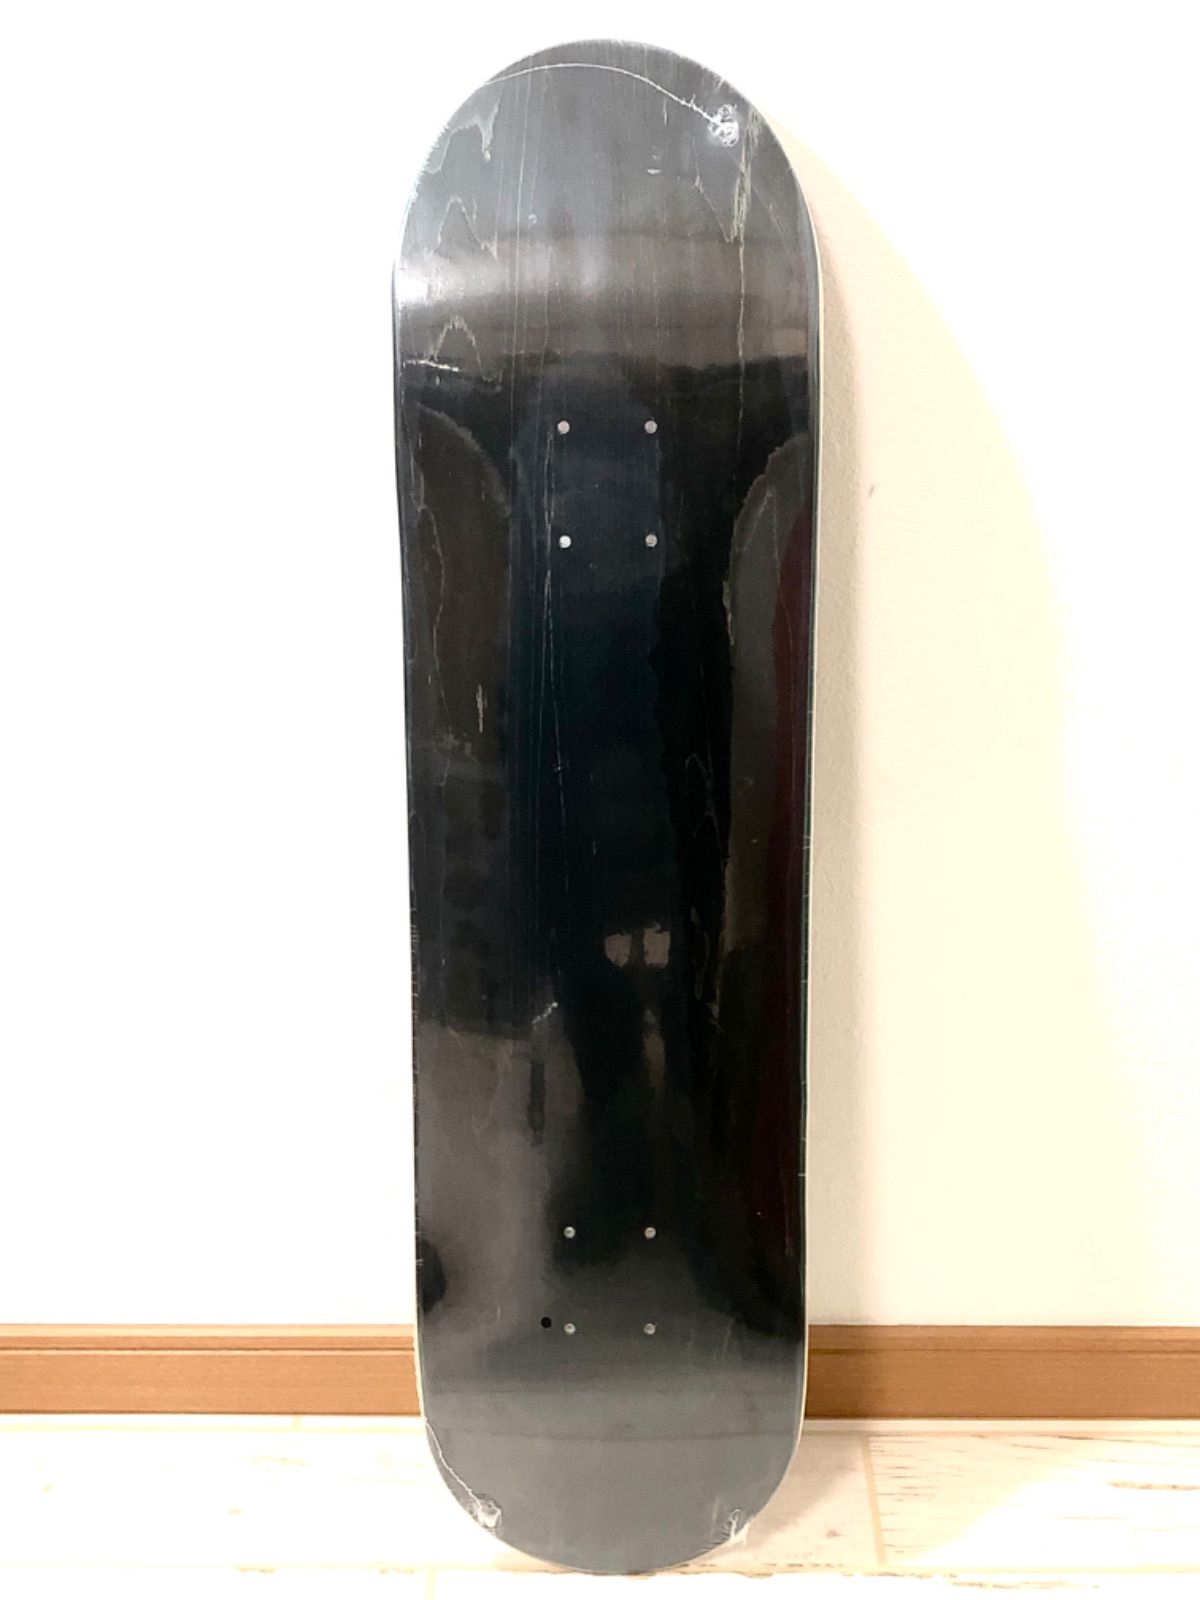 7.75インチ スケートボード デッキ 7層カナディアンメイプル デッキテープ